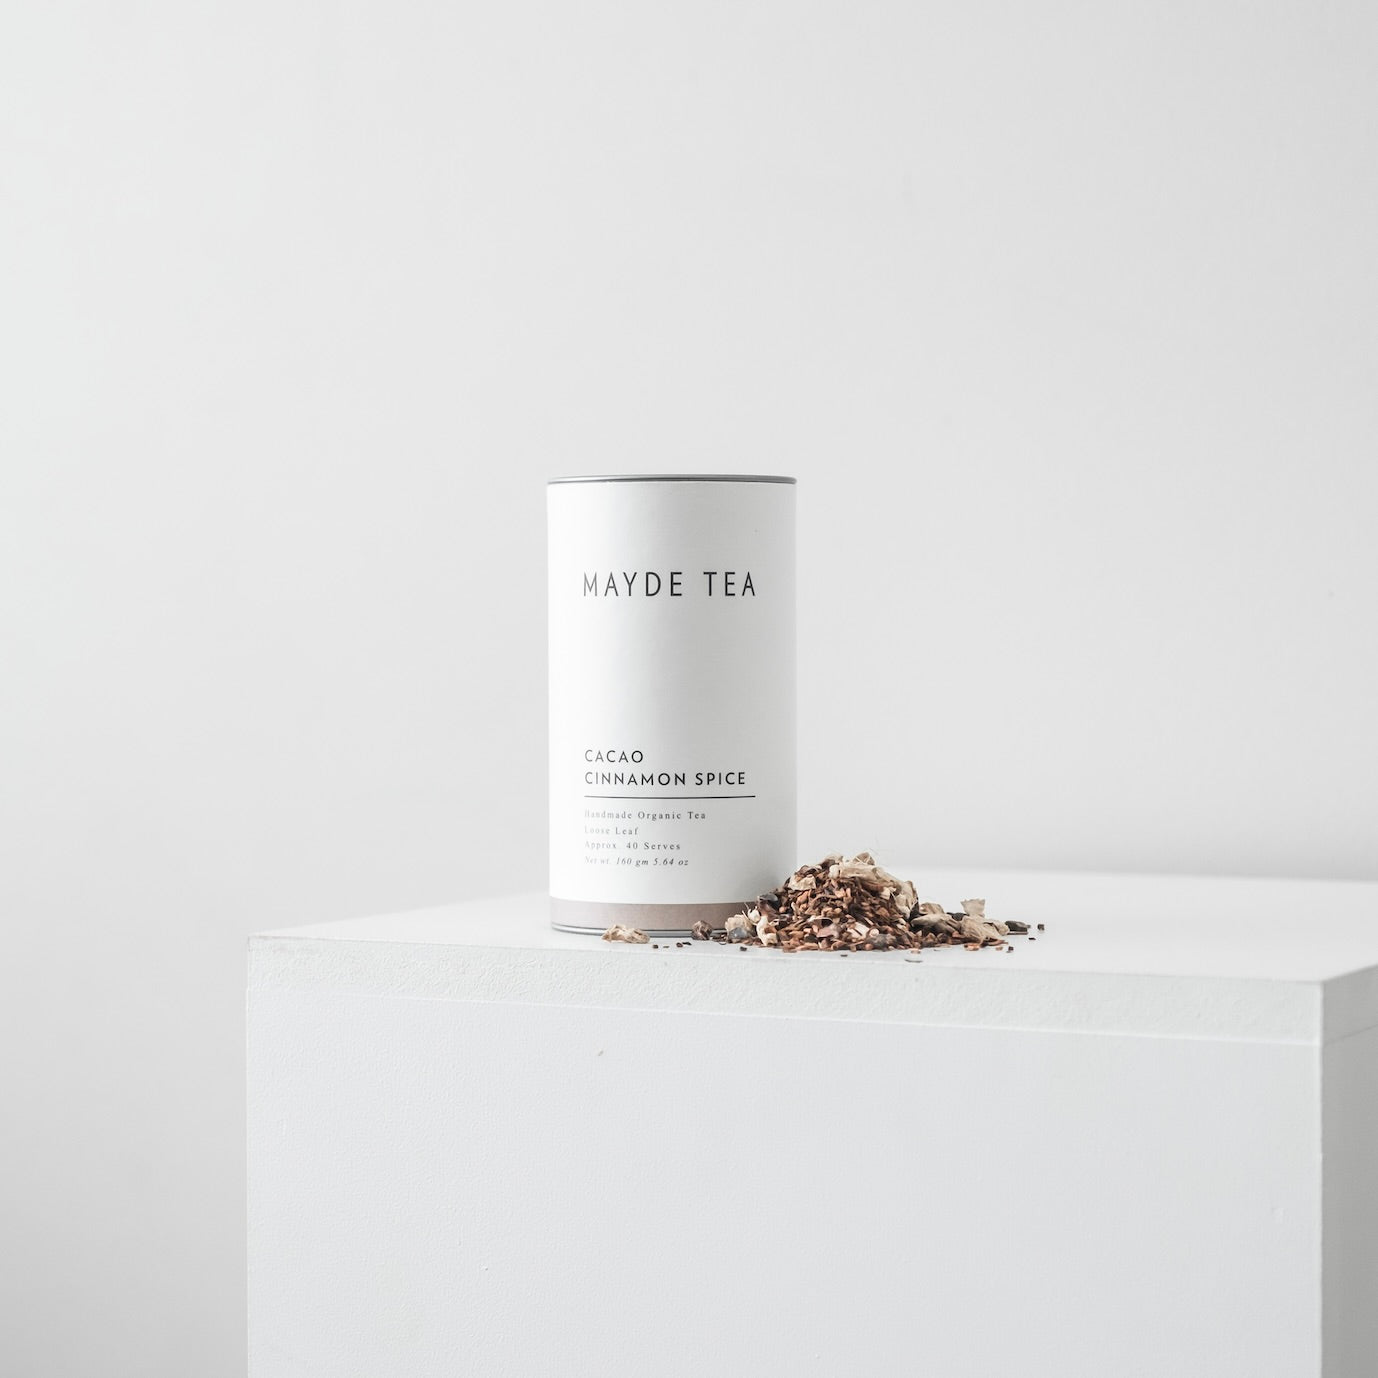 Cacao Cinnamon Spice - Loose Leaf Tea Herbal Teas Mayde Tea 40 serve tube  